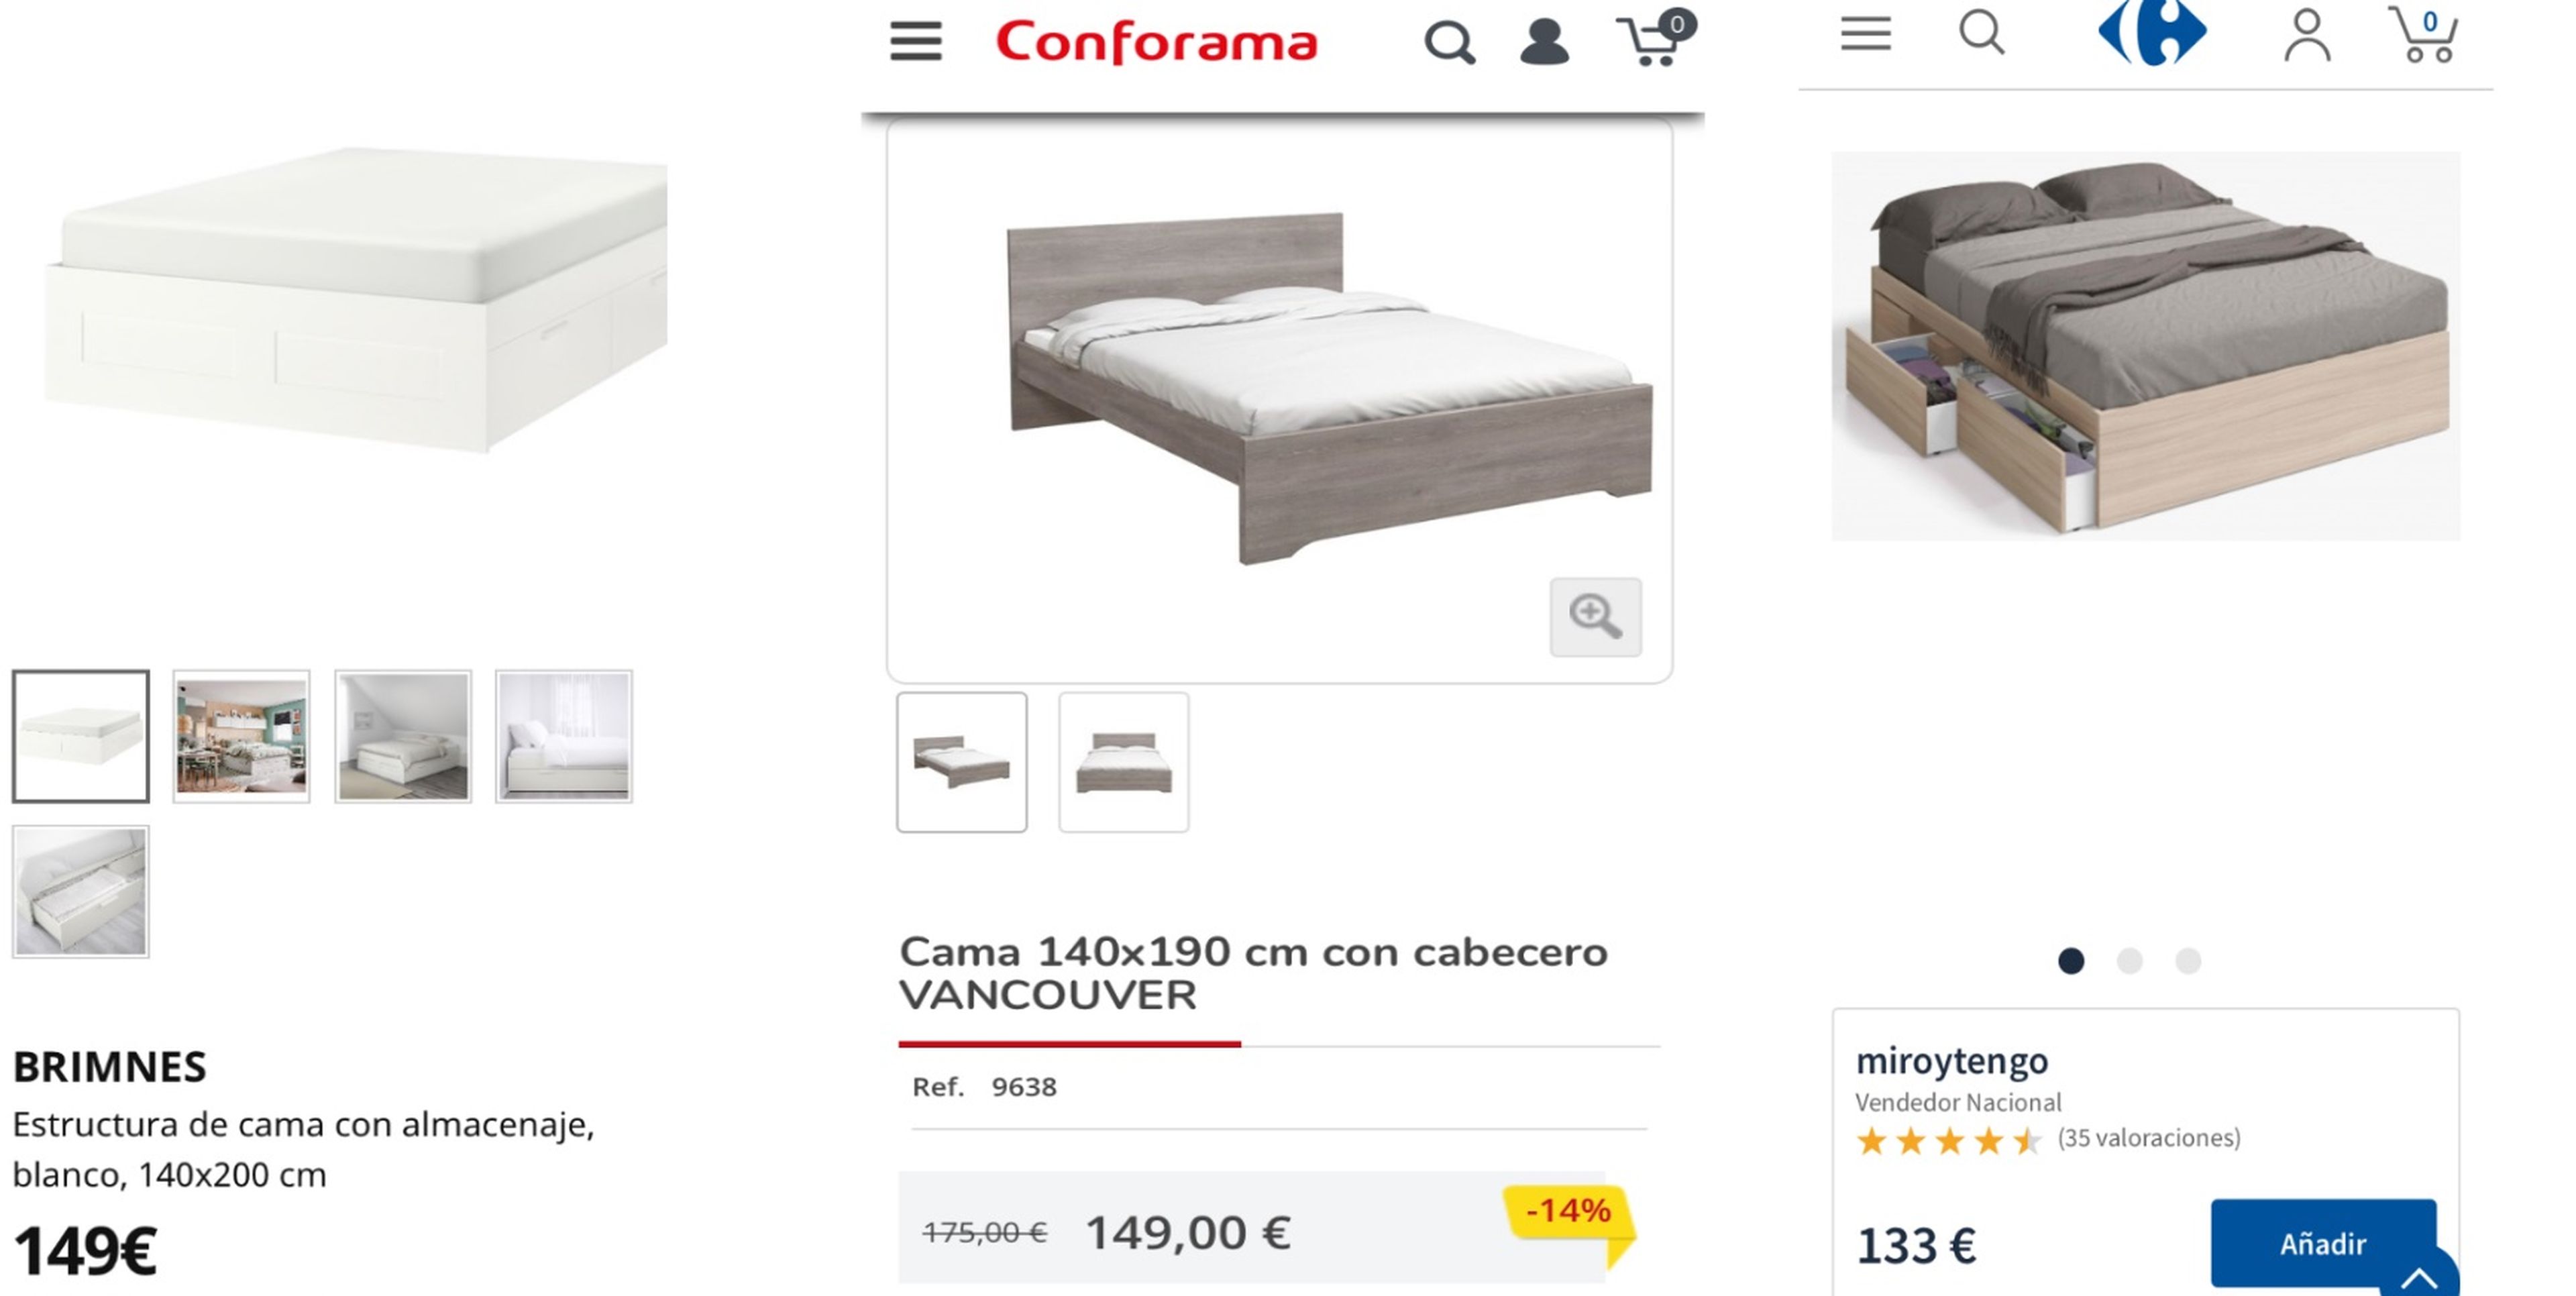 Cómo amueblar tu habitación por 600 euros: camas